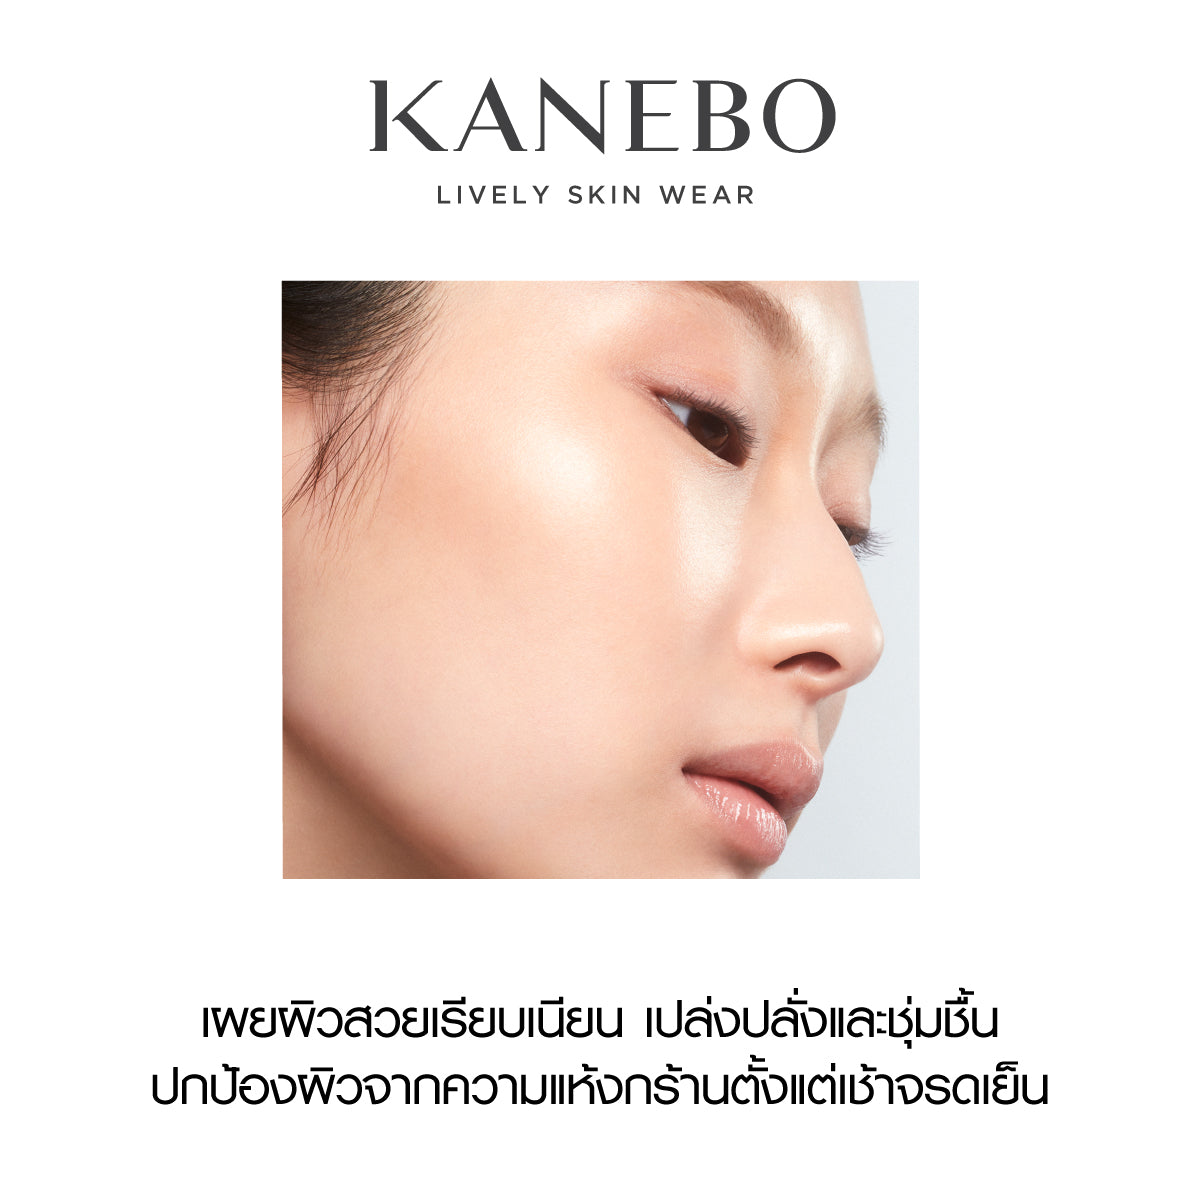 KANEBO LIVELY SKIN WEAR – Kanebo Thailand